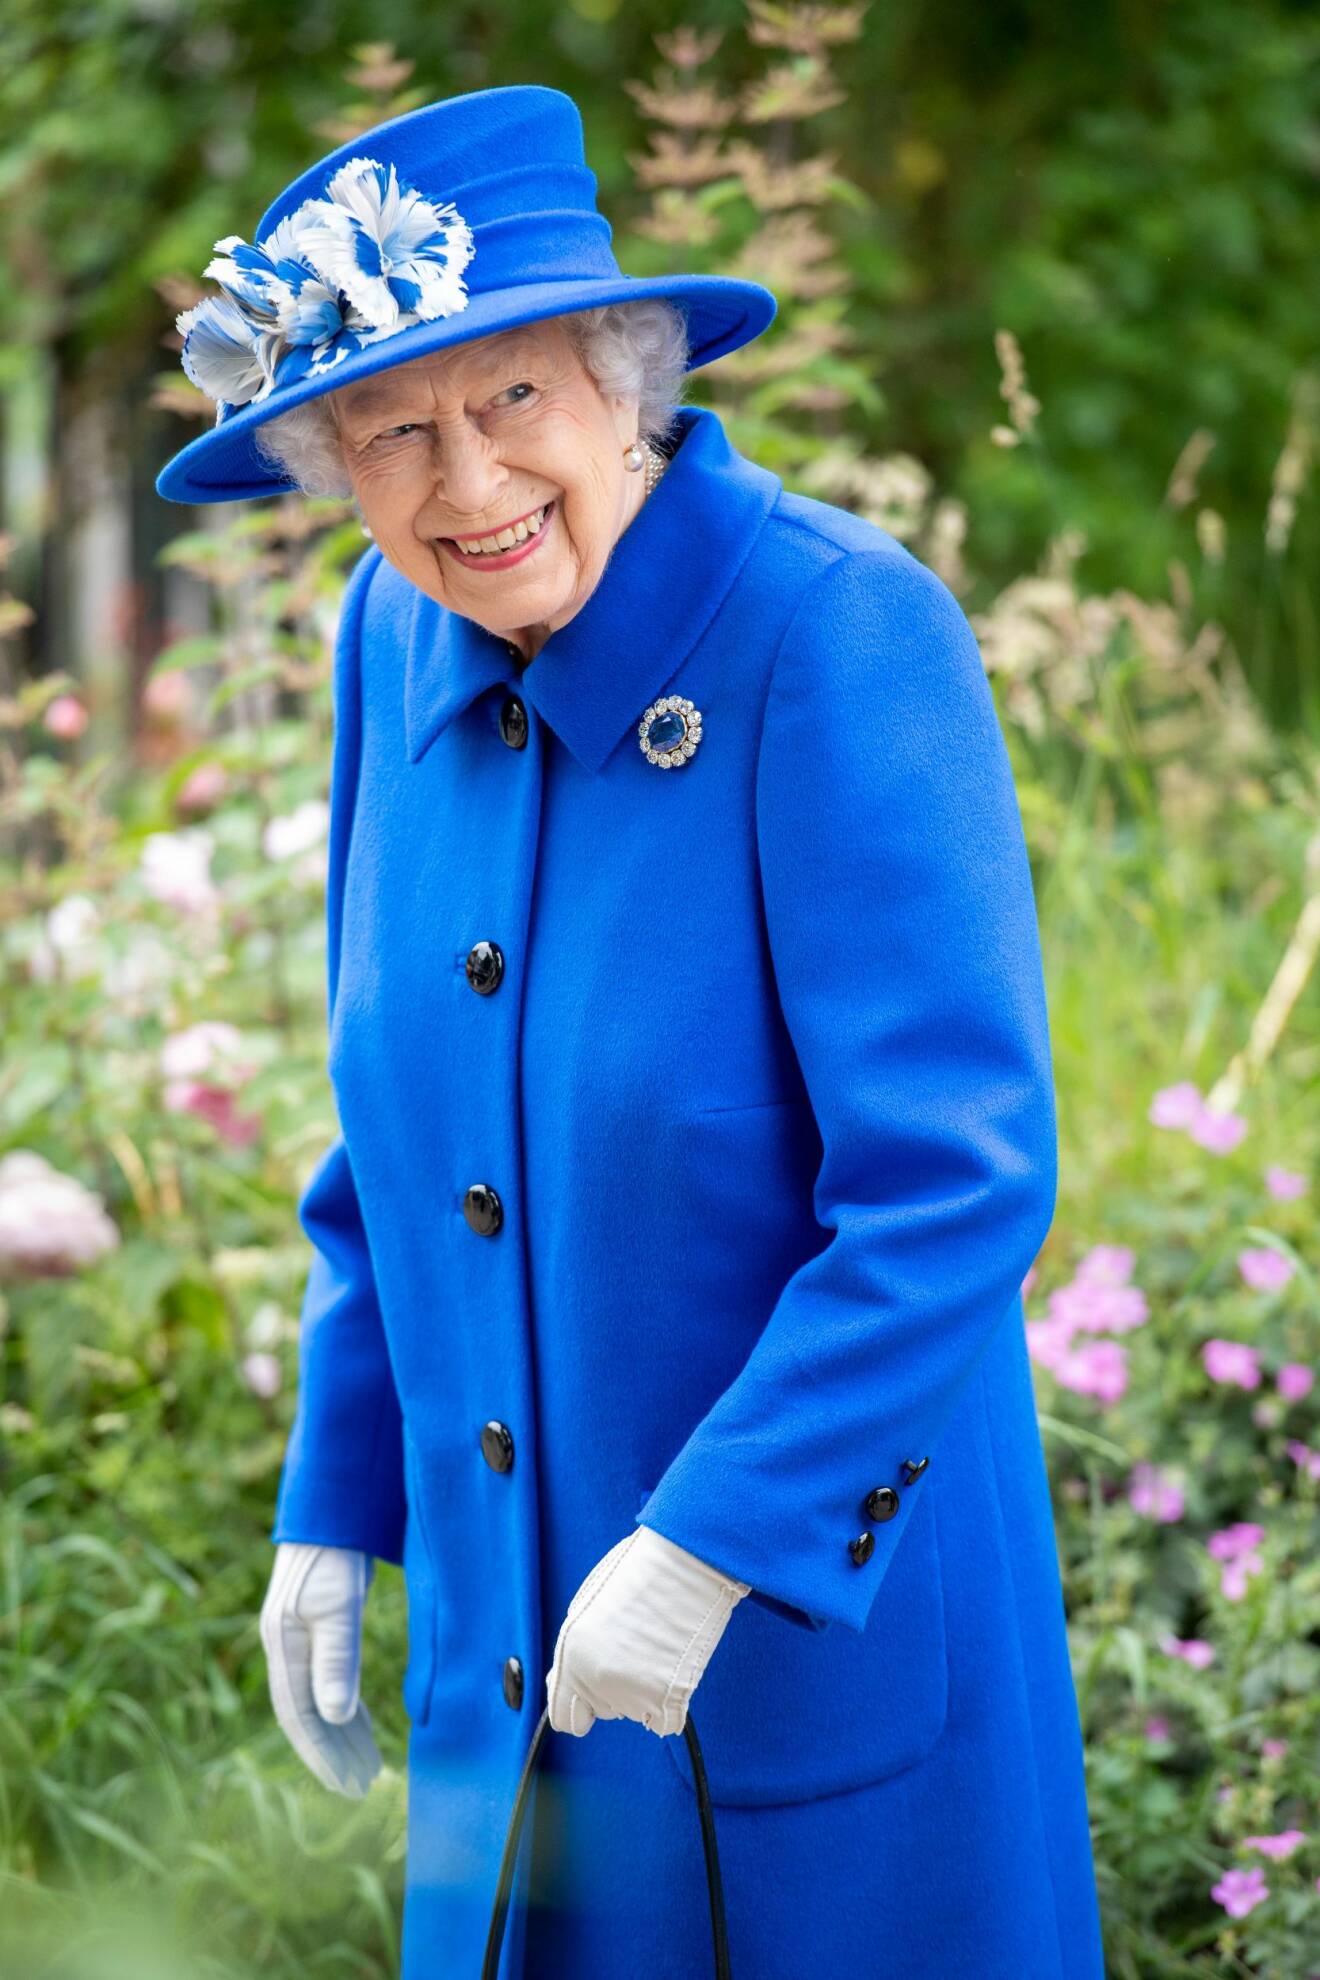 Drottning Elizabeth i klarblå dräkt med rock hatt med blåvita fjädrar i.